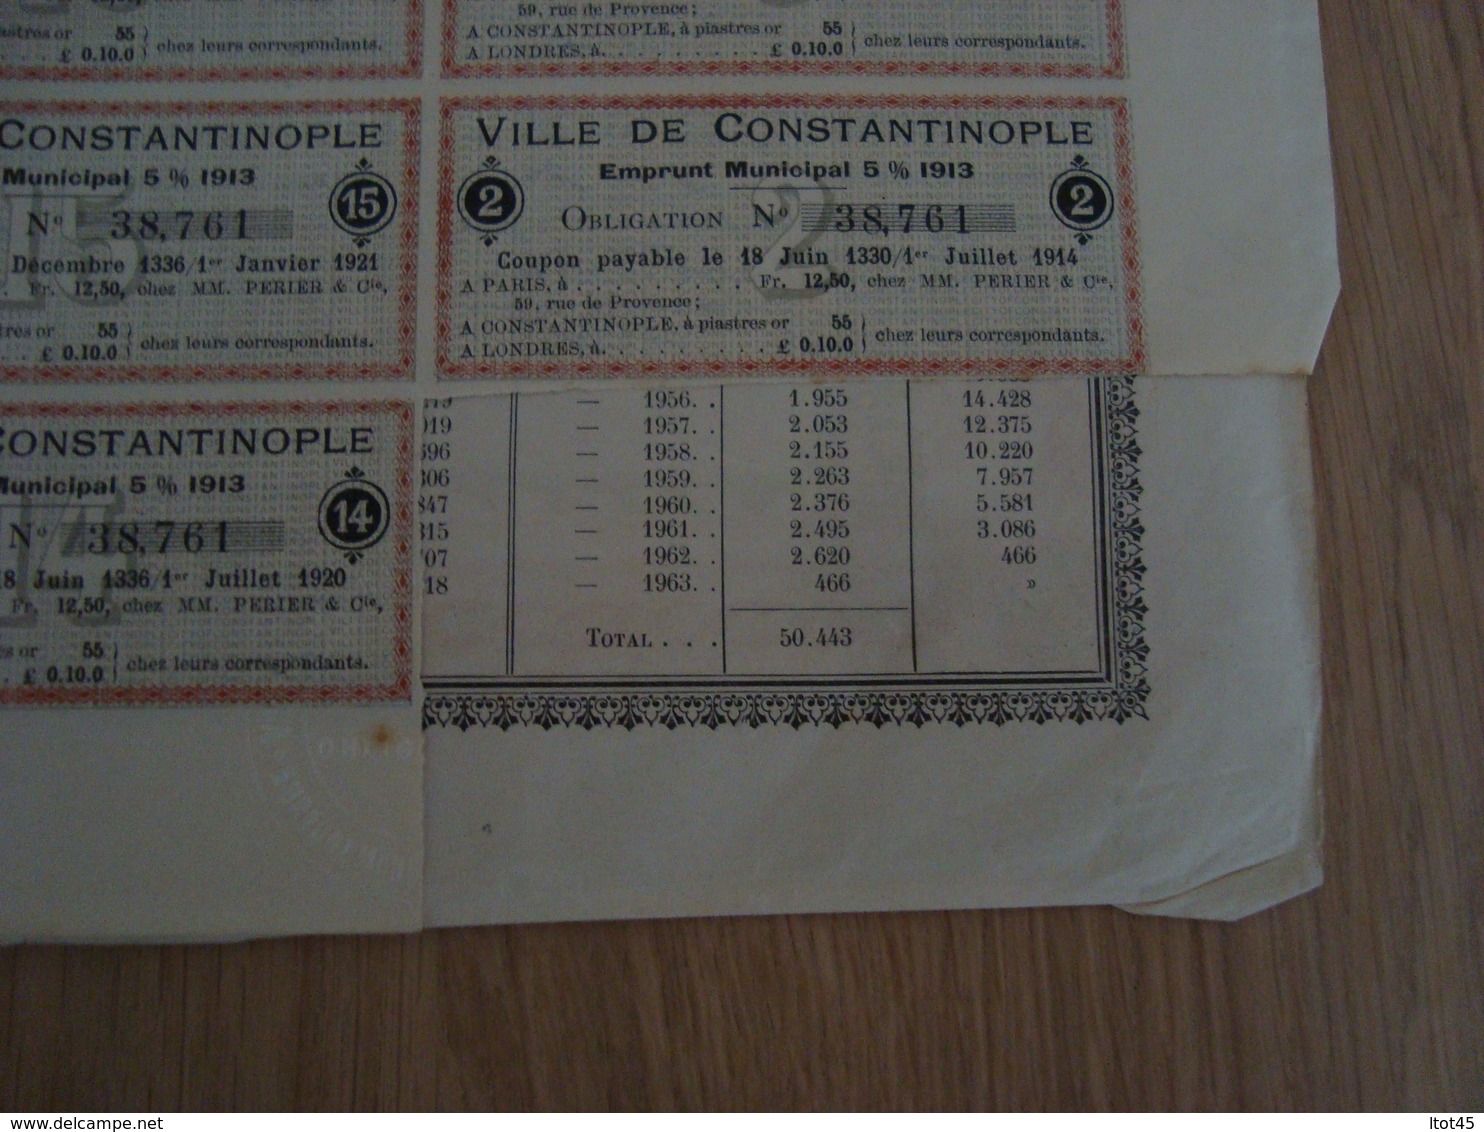 Emprunt Ville de Constantinople municipal 5% 1913, obligation de 500 frs